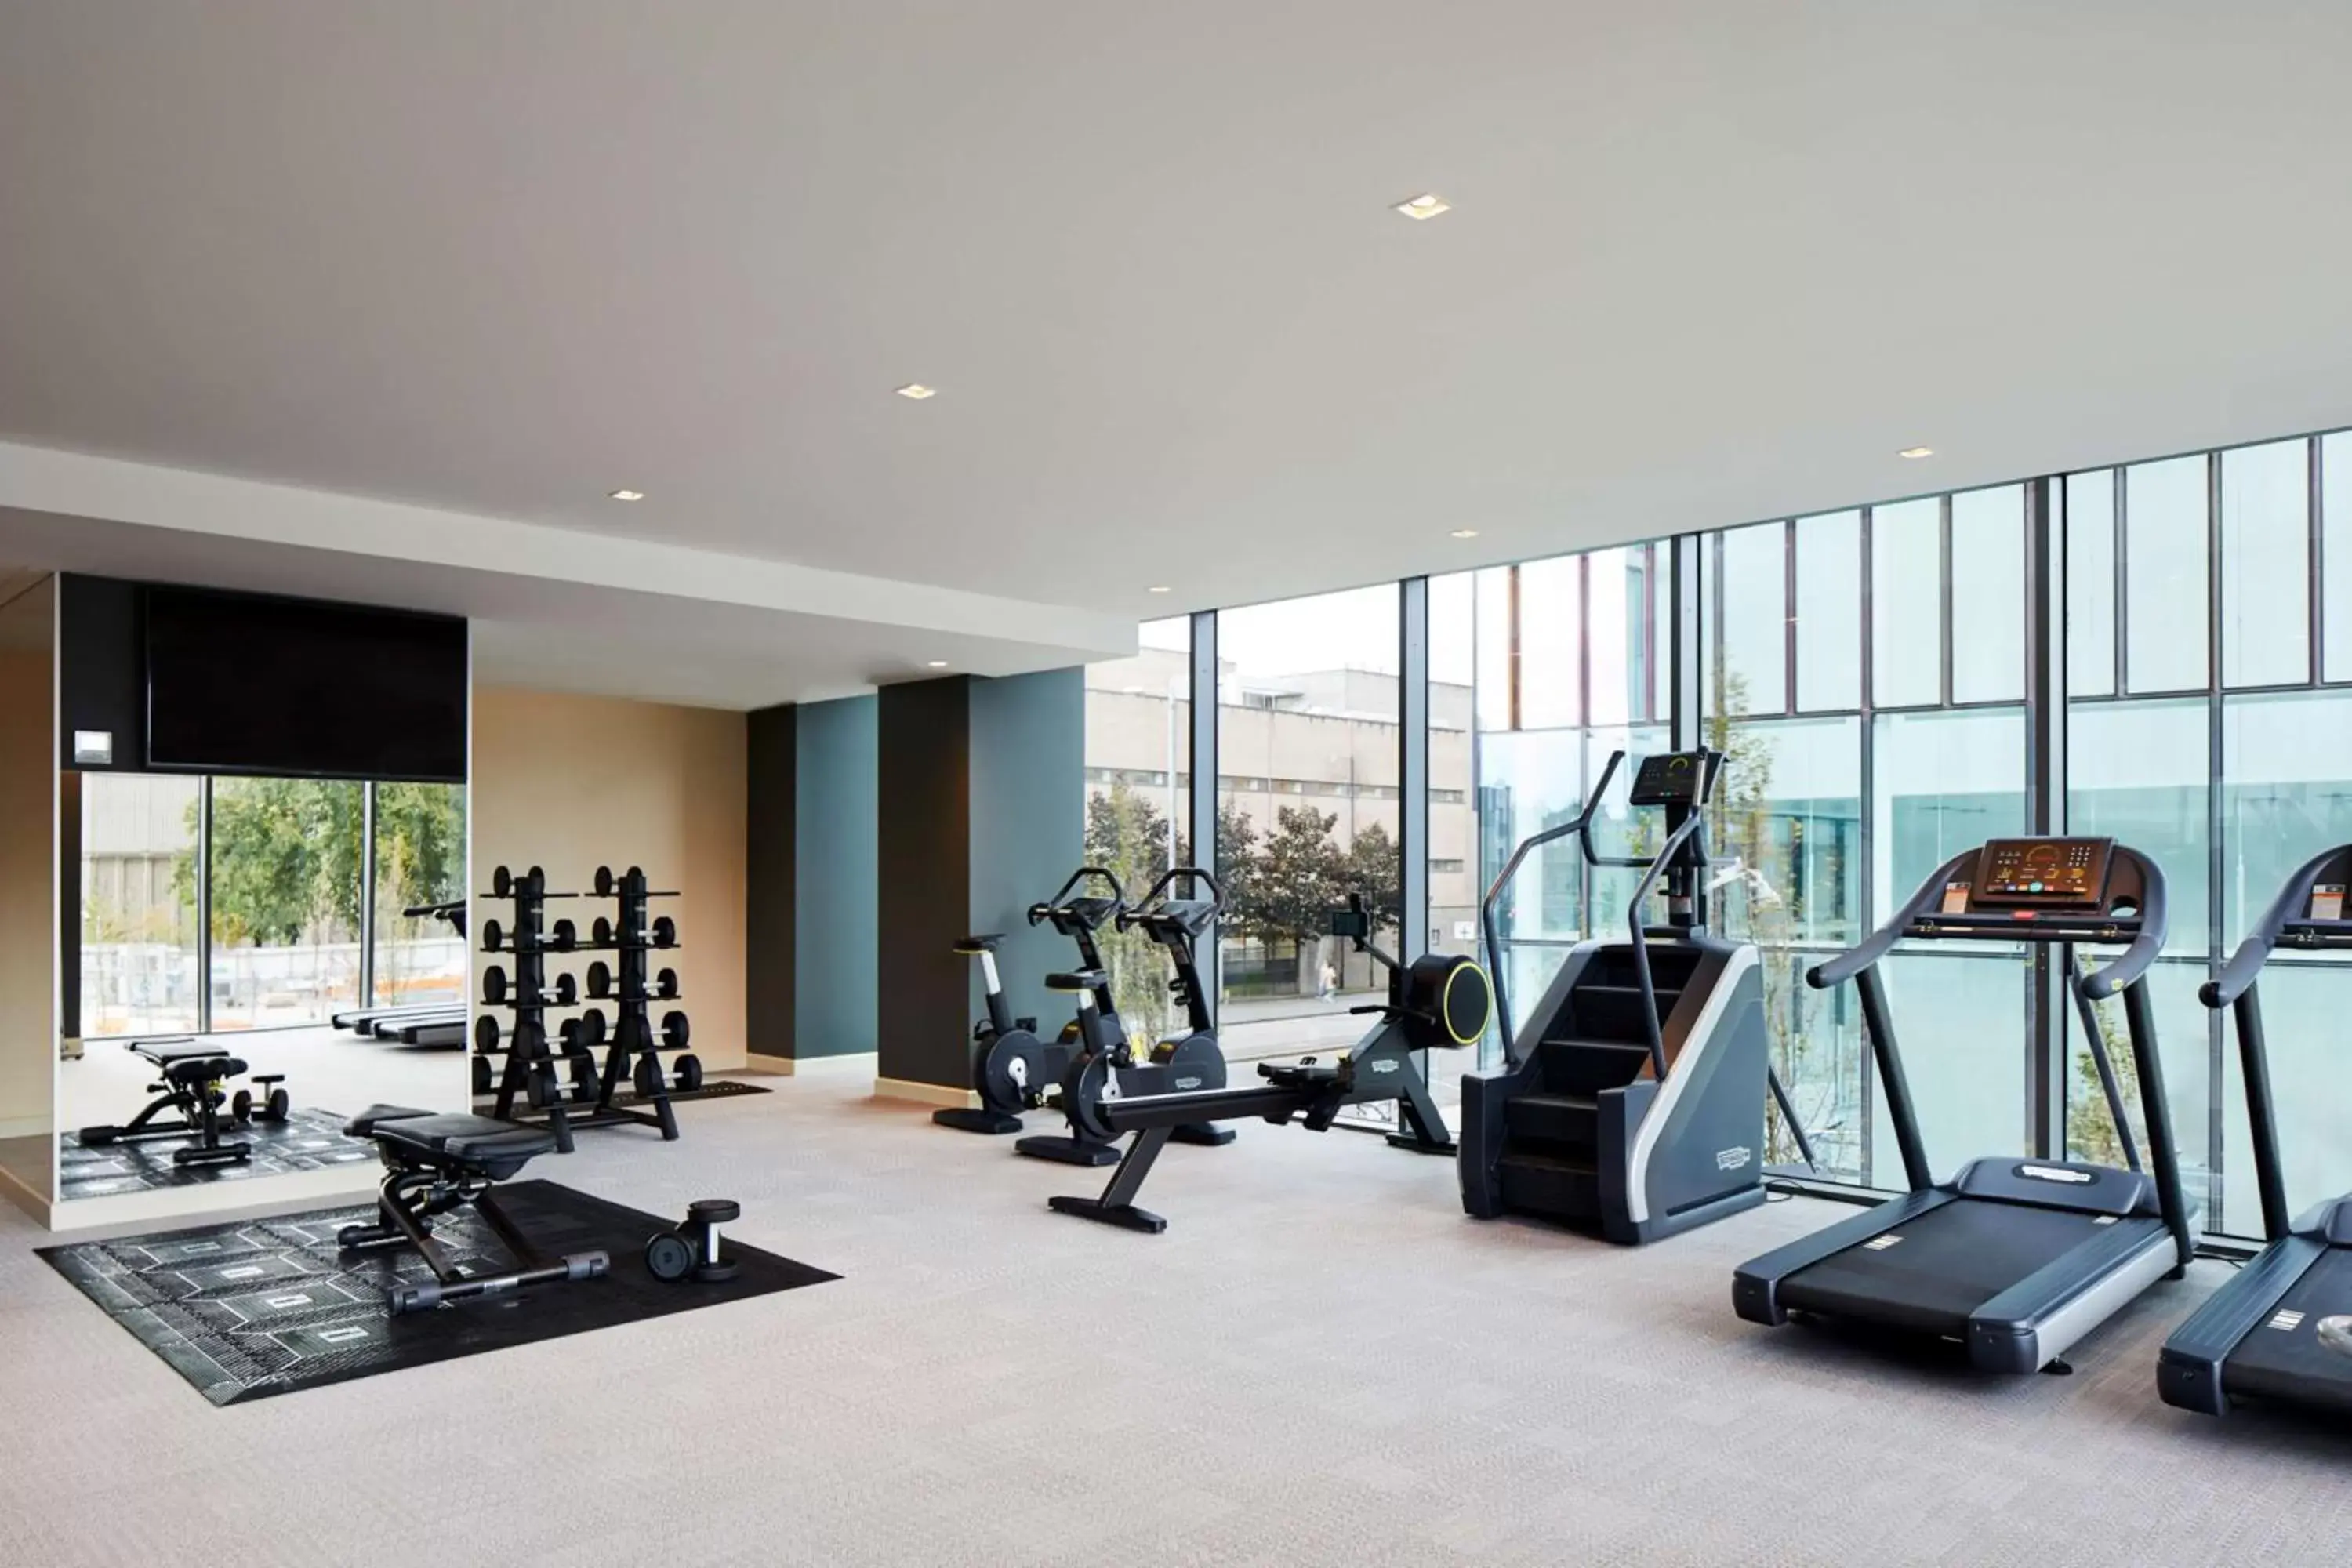 Fitness centre/facilities, Fitness Center/Facilities in Hyatt Regency Manchester